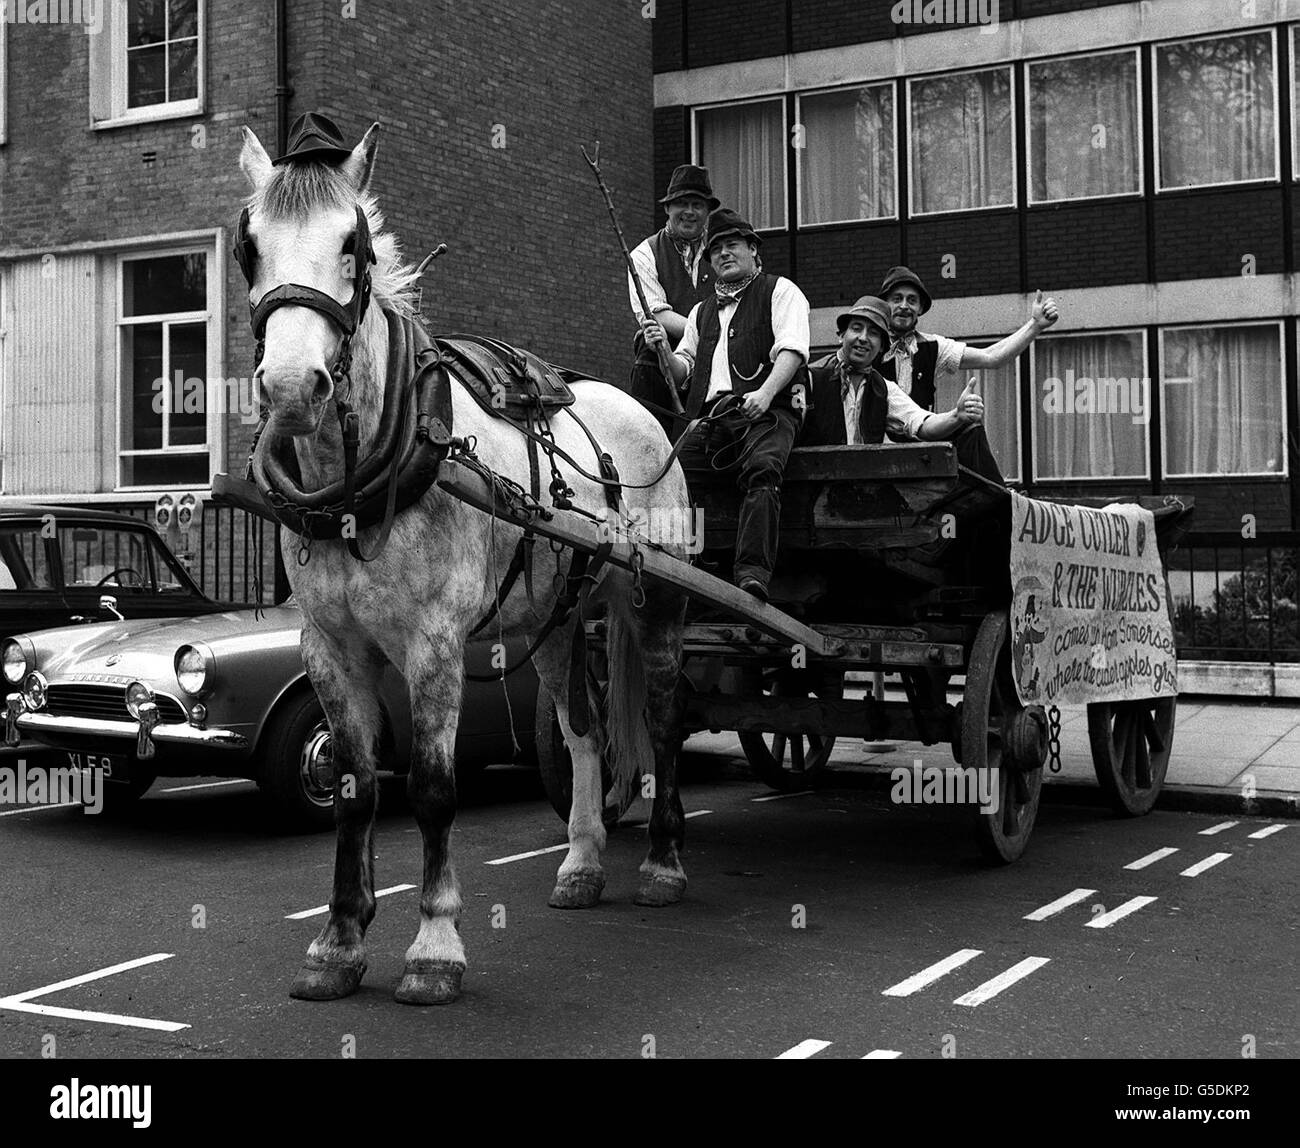 IL WURZELS 1967: Invadere Londra con il 'Zummerzet Zound' come Adge Cutler e il Wurzels tutto il tragitto da Somerset per un ricevimento all'EMI House. Originariamente fornendo accompagnamento musicale al sidro che beve, ora viaggiano in tutta l'Inghilterra. (l-r) Reg Quantrell, Adge Cutler, Reg Chant e Johnny Macey. Foto Stock